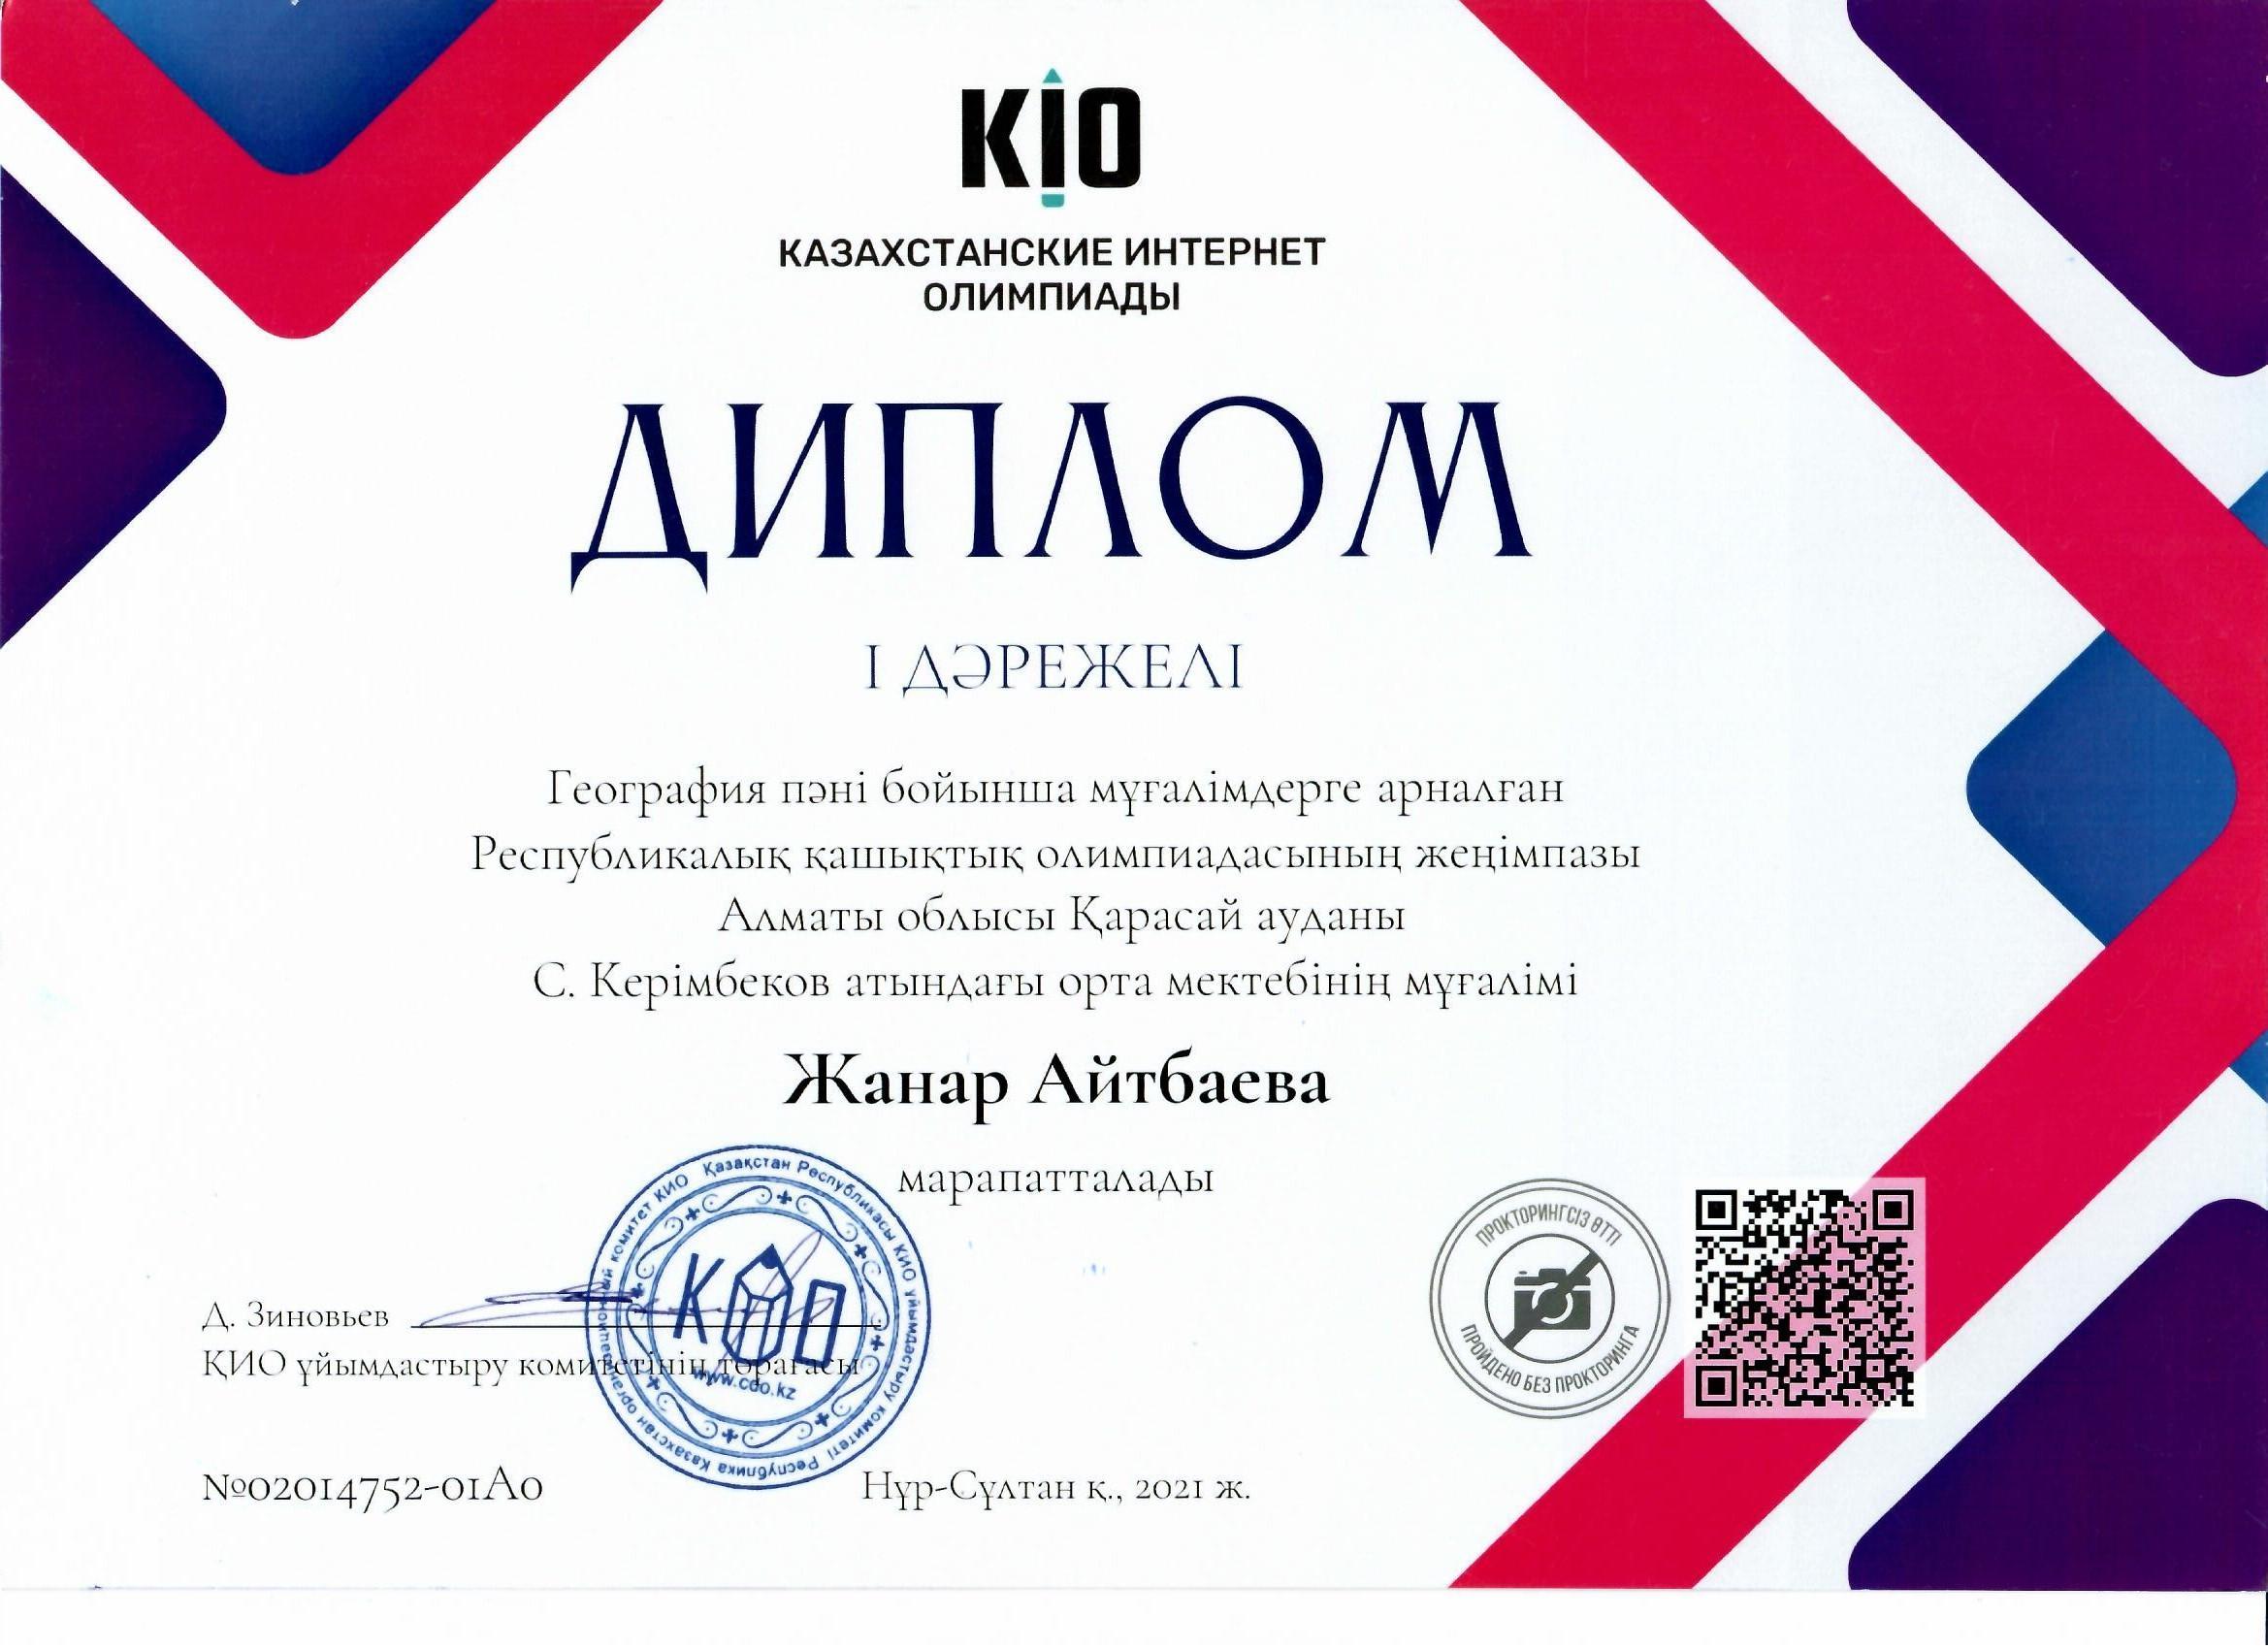 "KIO" Республикалық қашықтық олимпиадасы, "І дәрежелі Диплом", Жанар Айтбаева